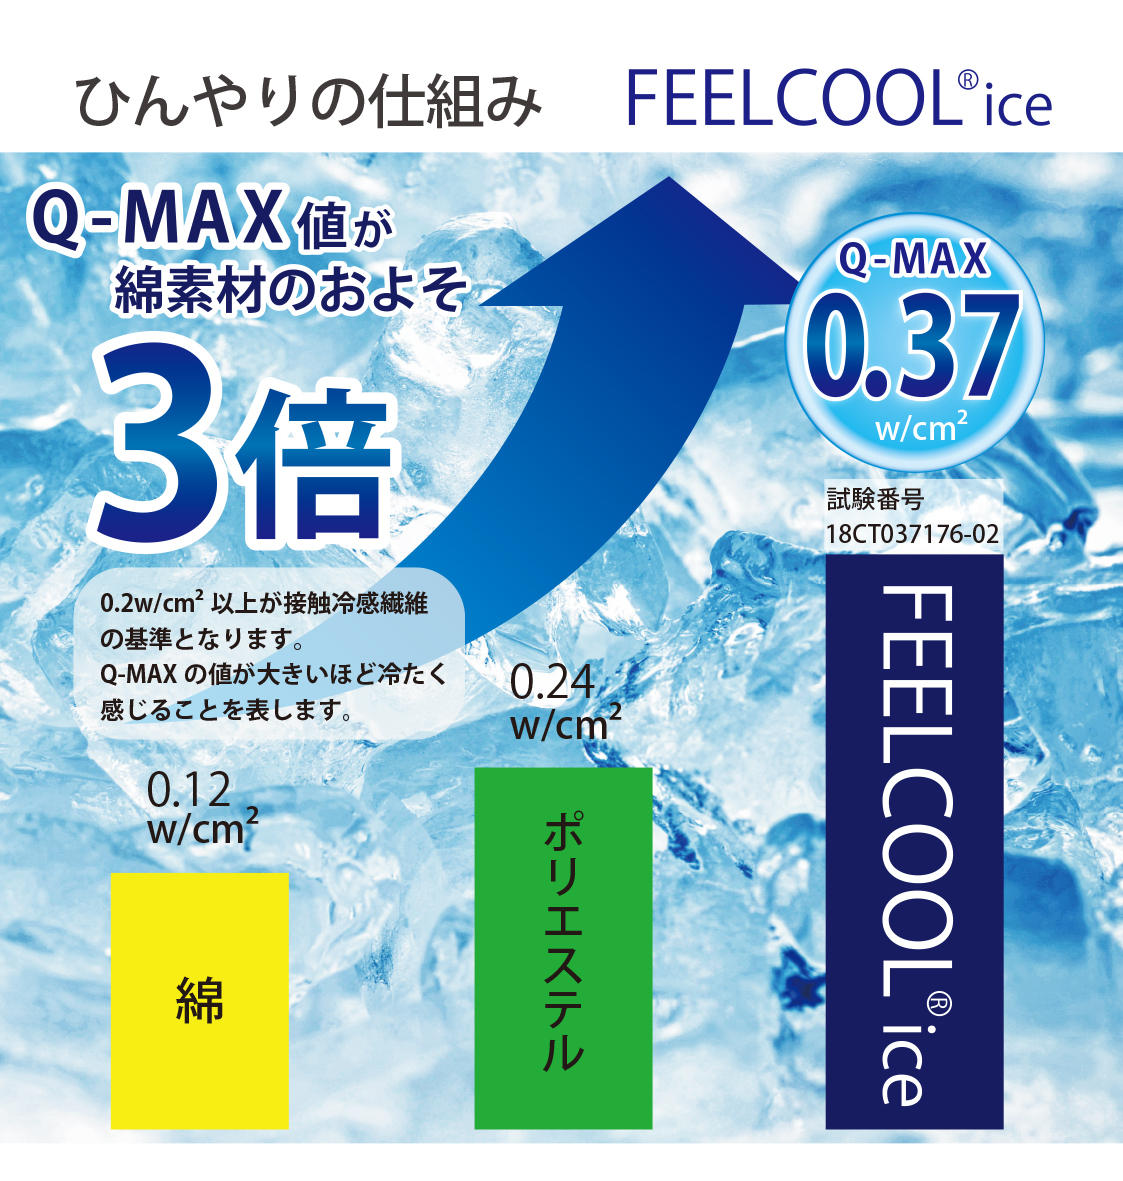 ^Ăłċzyɂł闧̗⊴}XNwAIR COOL MASKxv[gLy[72{I`⊴xQ-MAXl0.37 FEELCOOL(R) icegp`